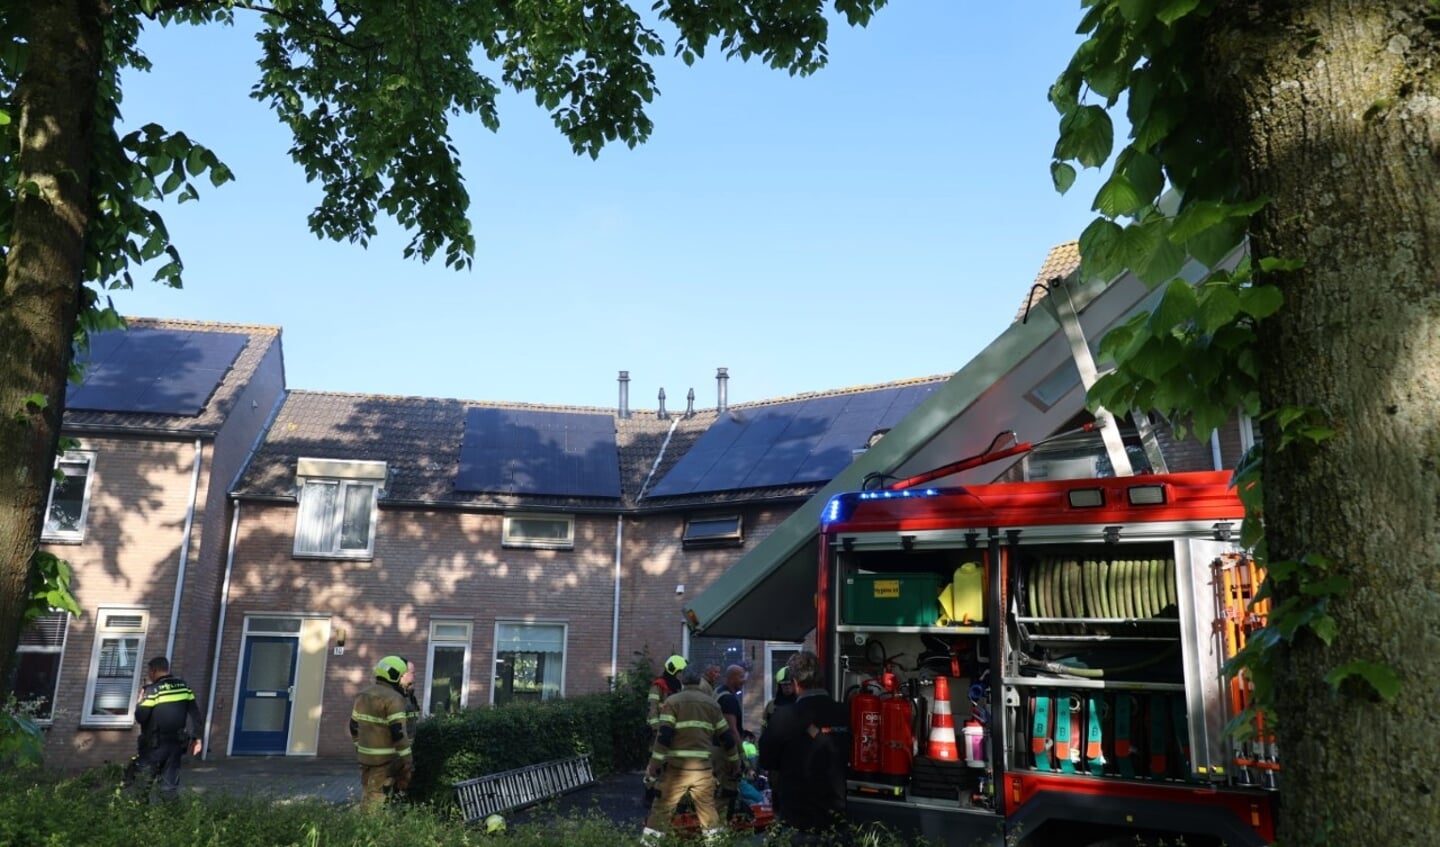 De brandweer is vanmorgen uitgerukt voor een woningbrand aan Het Meerke in Den Bosch waarbij een zwaargewonde is gevallen.